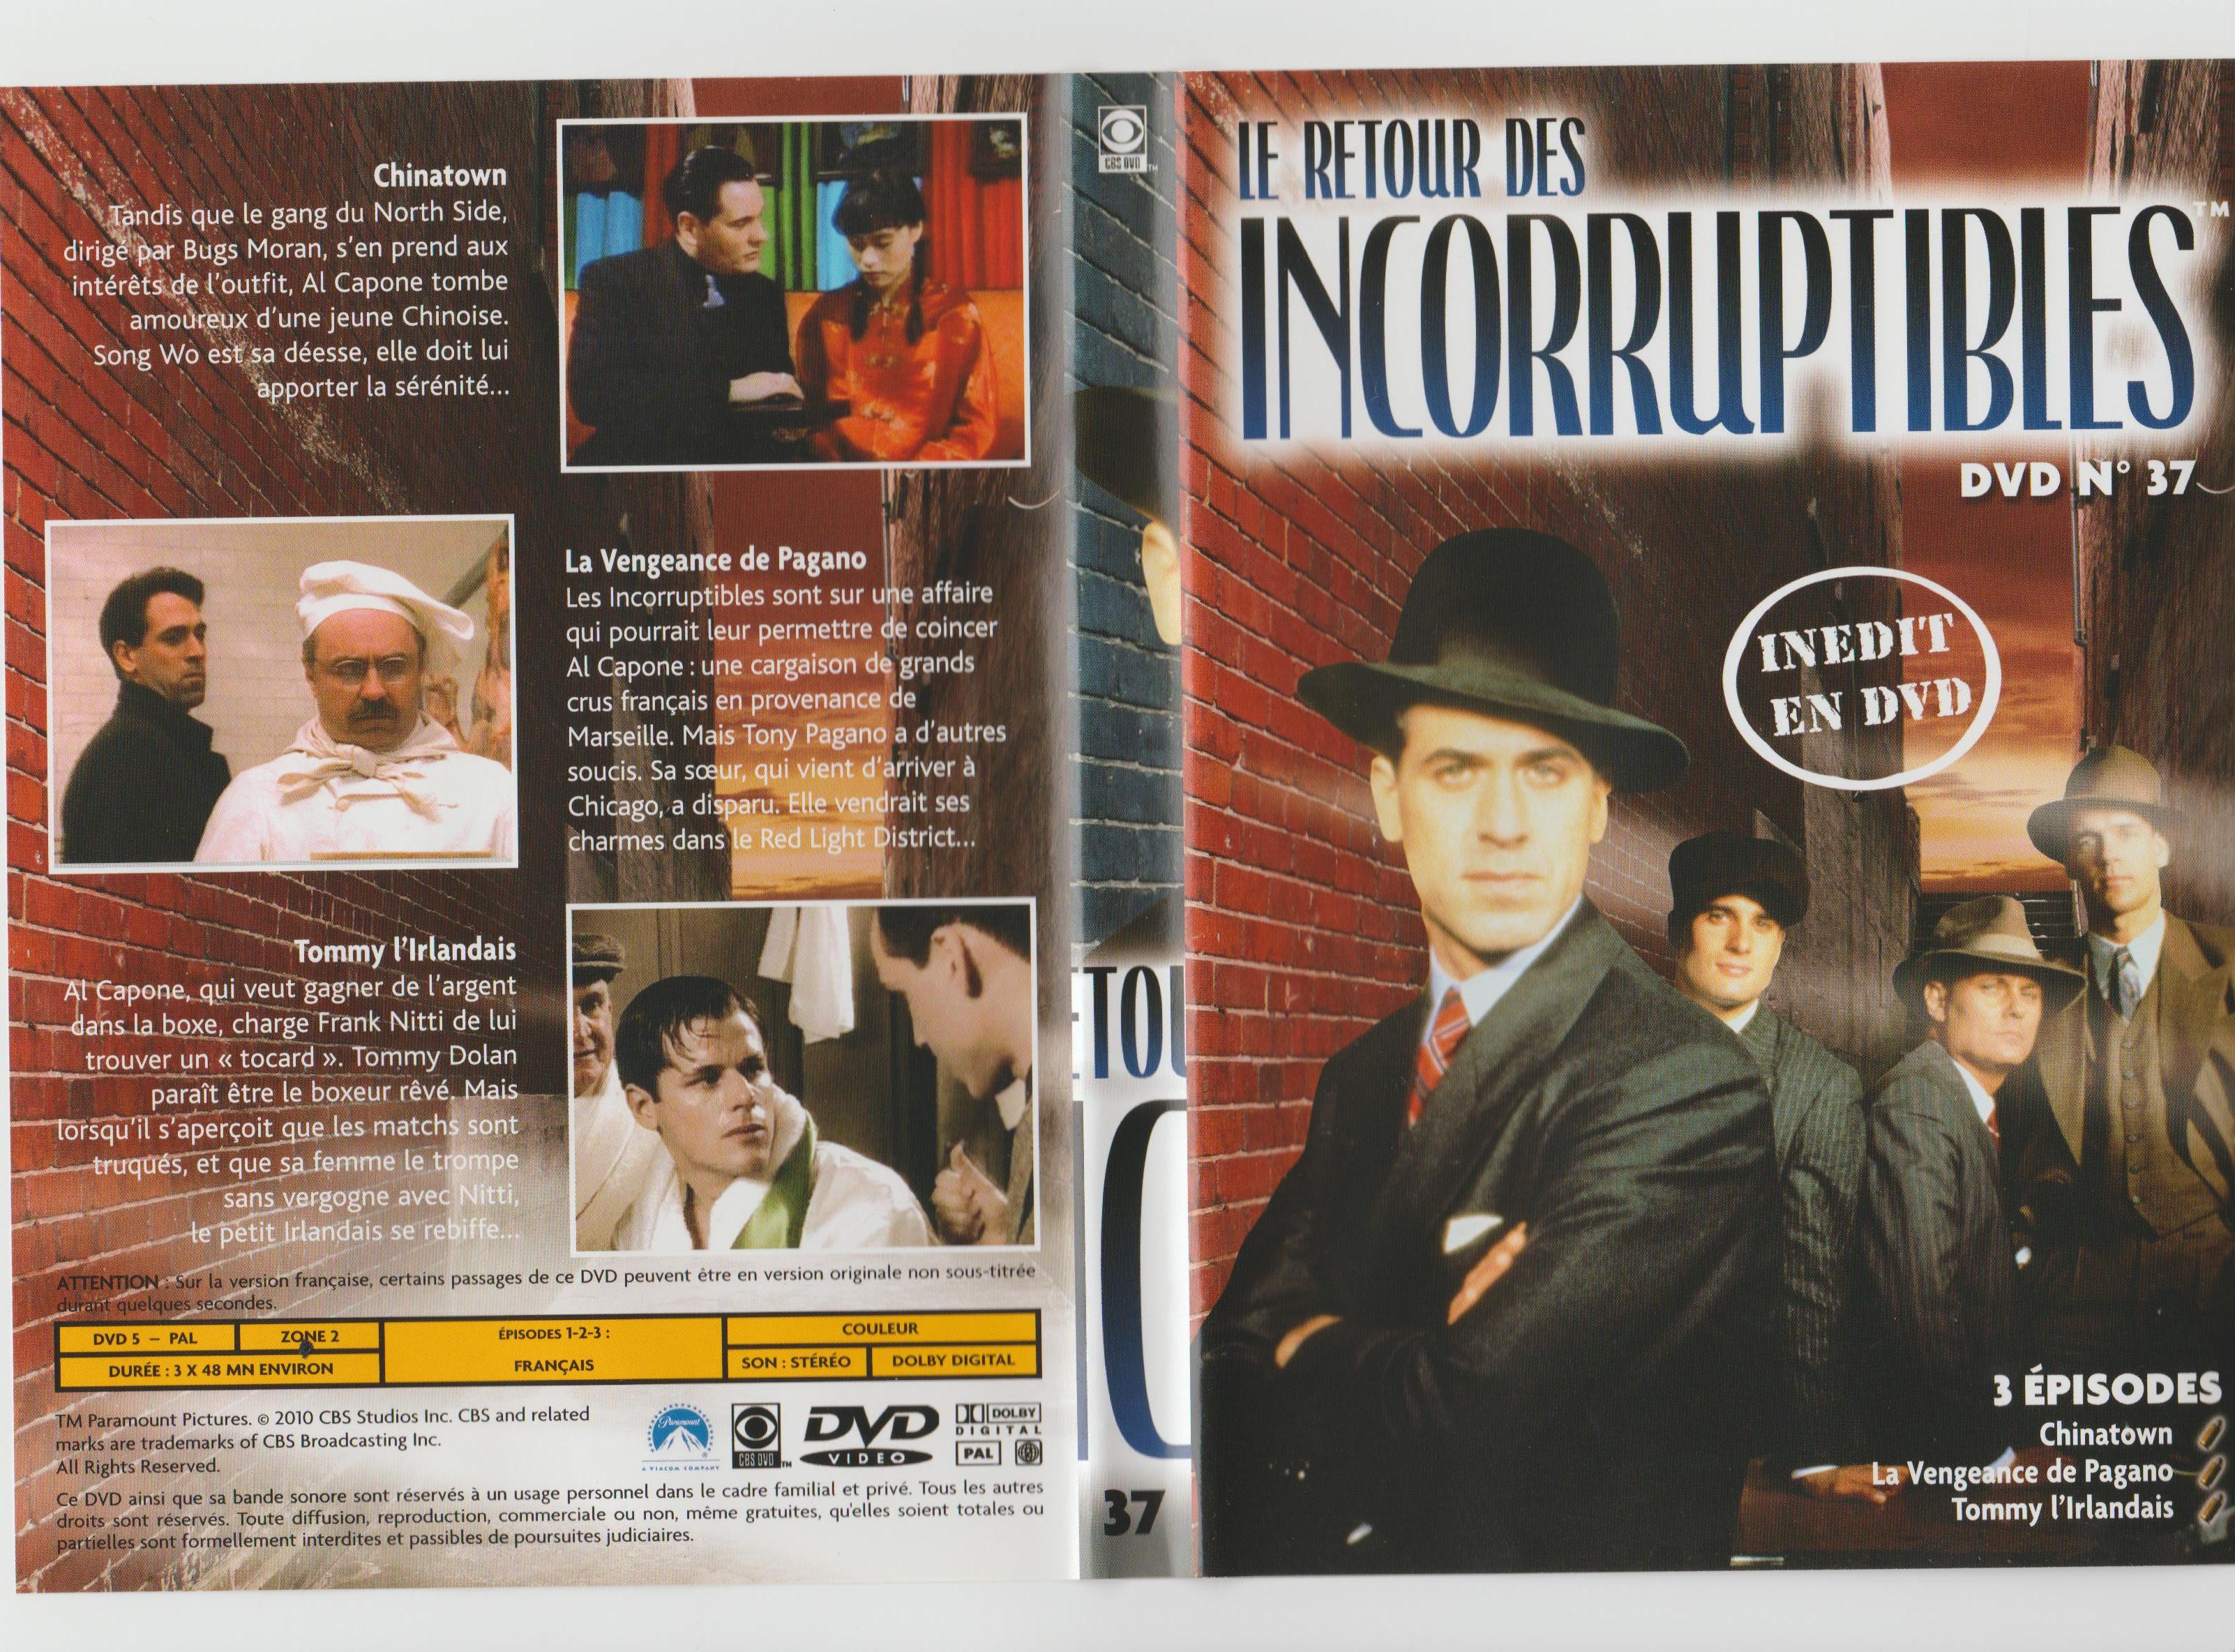 Jaquette DVD Le retour des incorruptibles DVD 37